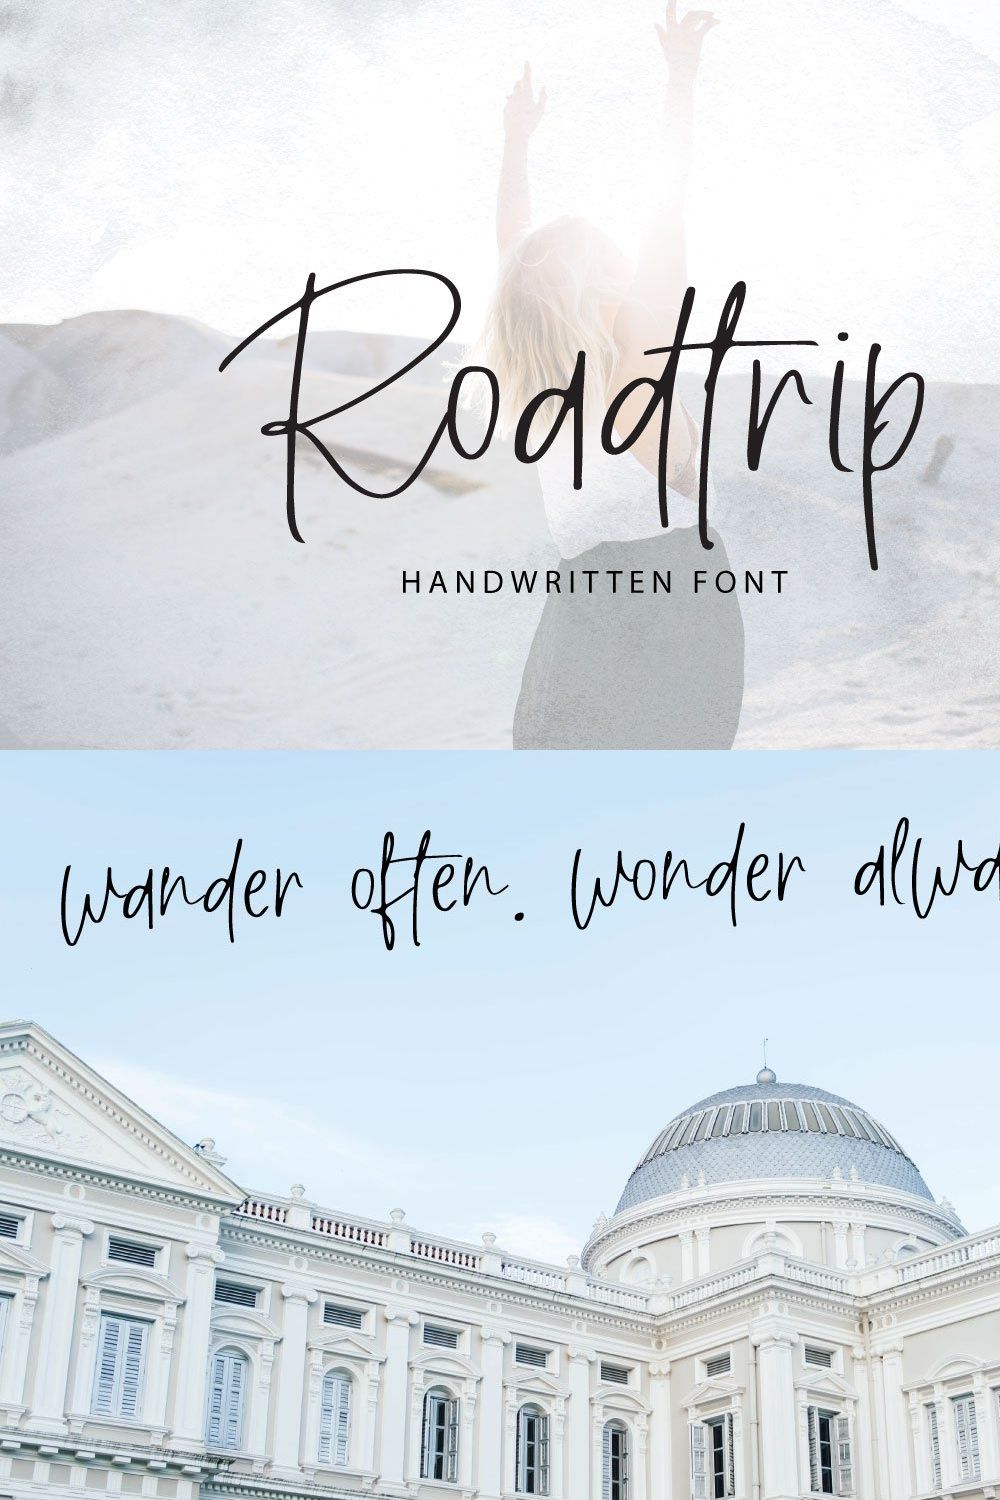 Roadtrip | Handwritten Font pinterest preview image.